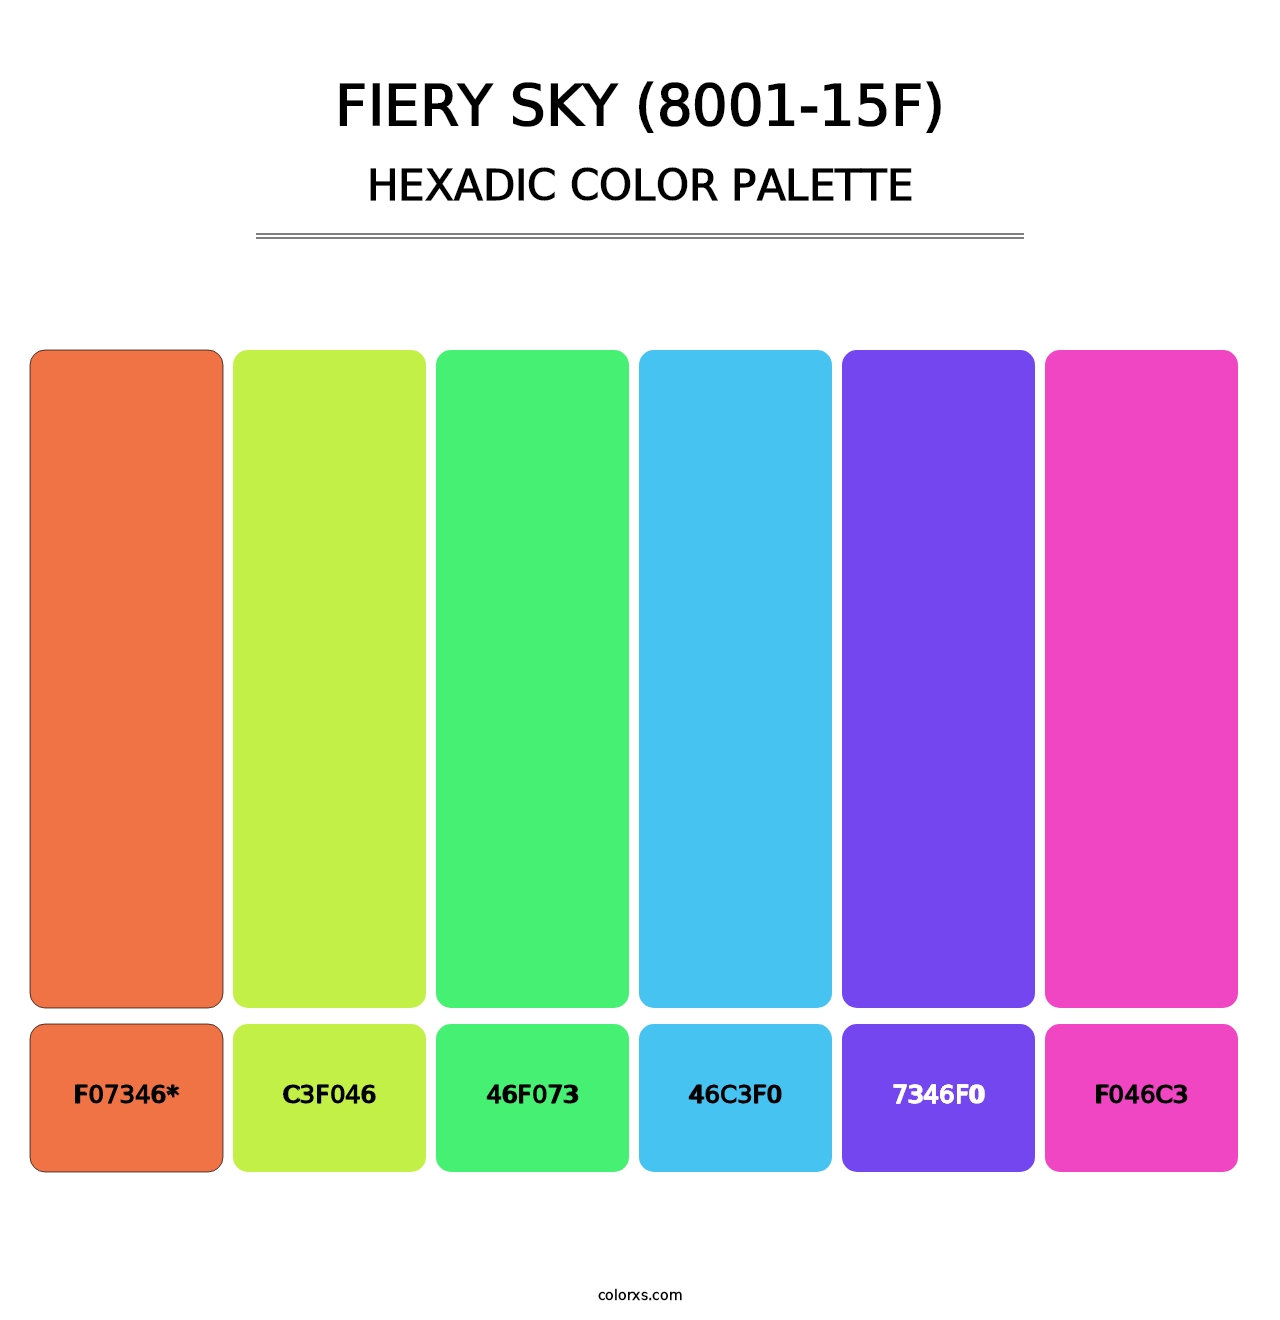 Fiery Sky (8001-15F) - Hexadic Color Palette